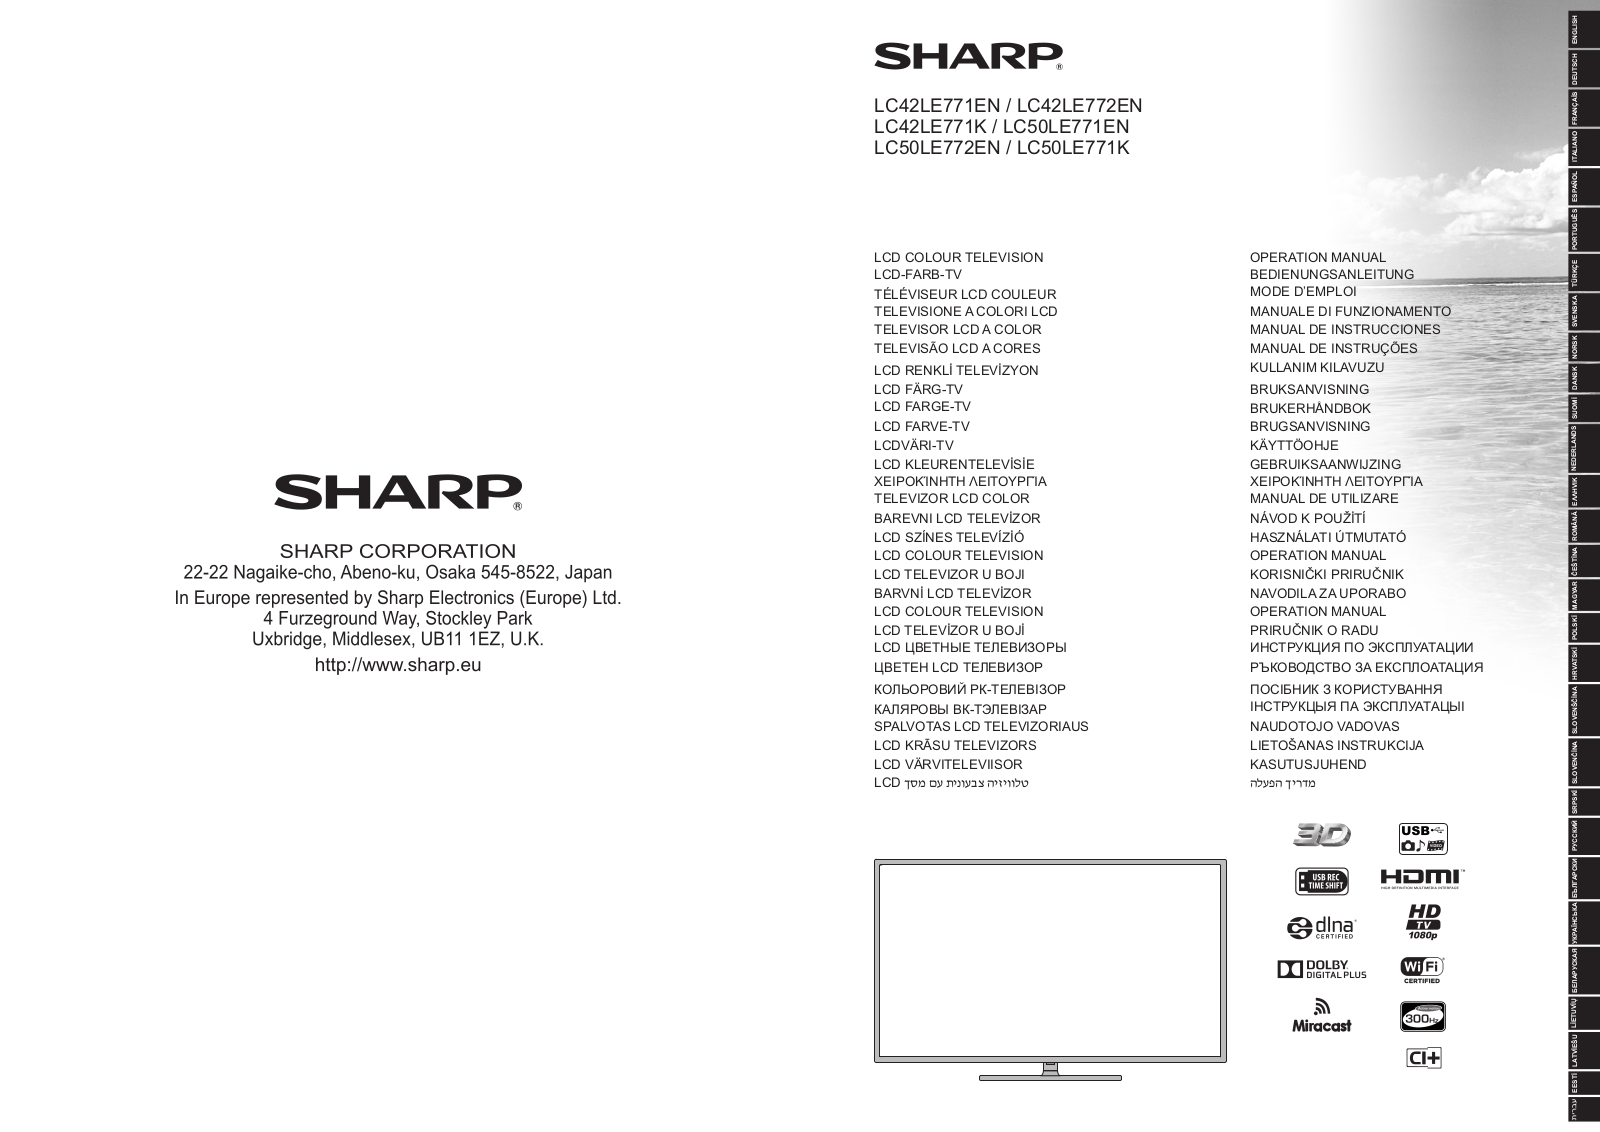 Sharp LC42LE771EN, LC50LE771K, LC50LE771EN, LC42LE771K, LC42LE772EN User Manual